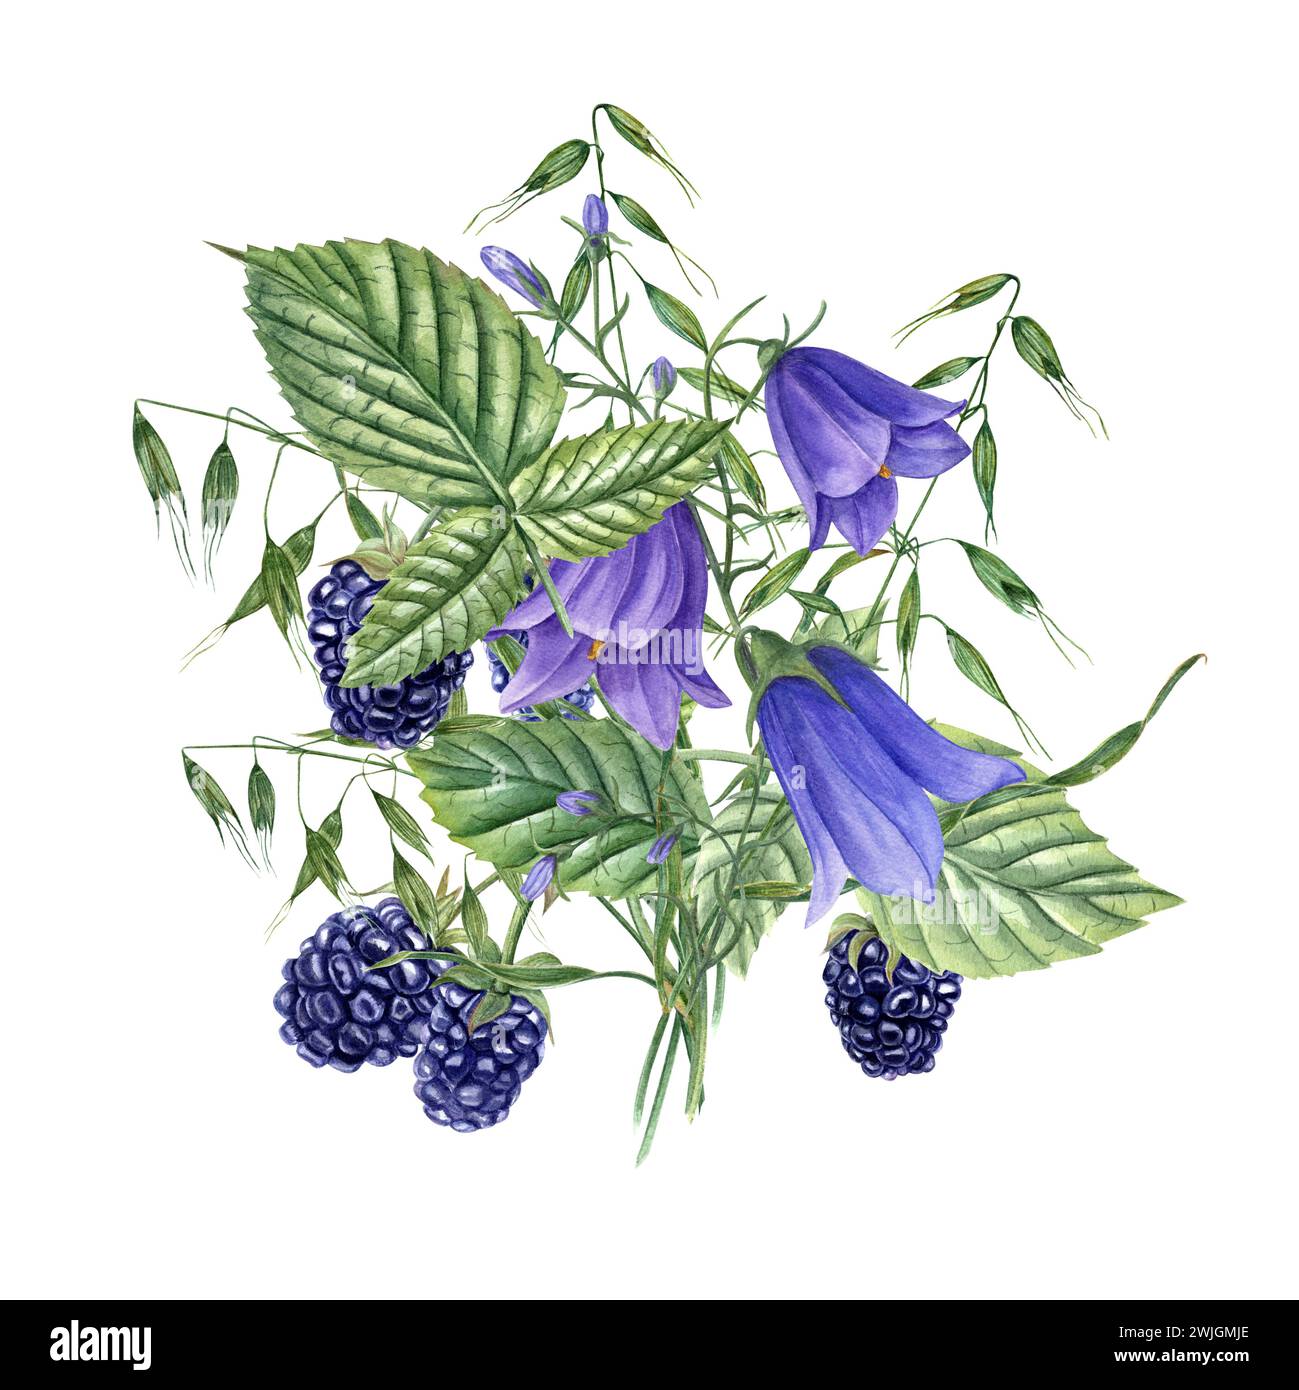 Bouquet con Blackberries, campanelli blu, avena selvatica. Piante di prato e frutti di bosco. Campanula, avena. Dewberry, bramble. Illustrazione acquerello Foto Stock